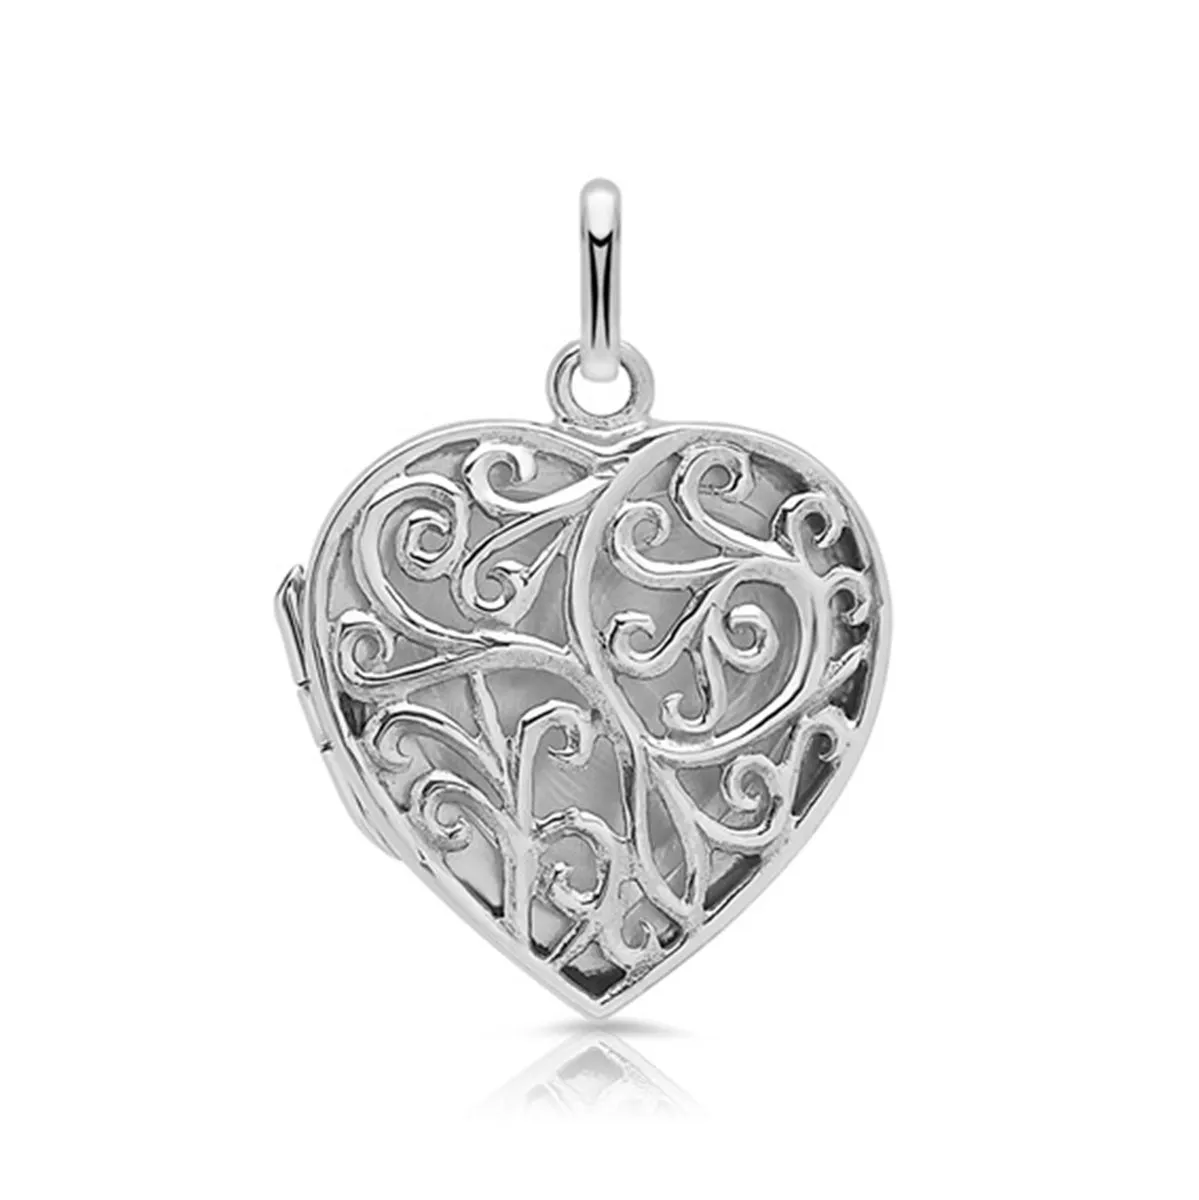 Herzmedaillon mit Ornamenten und Gravur - Silber